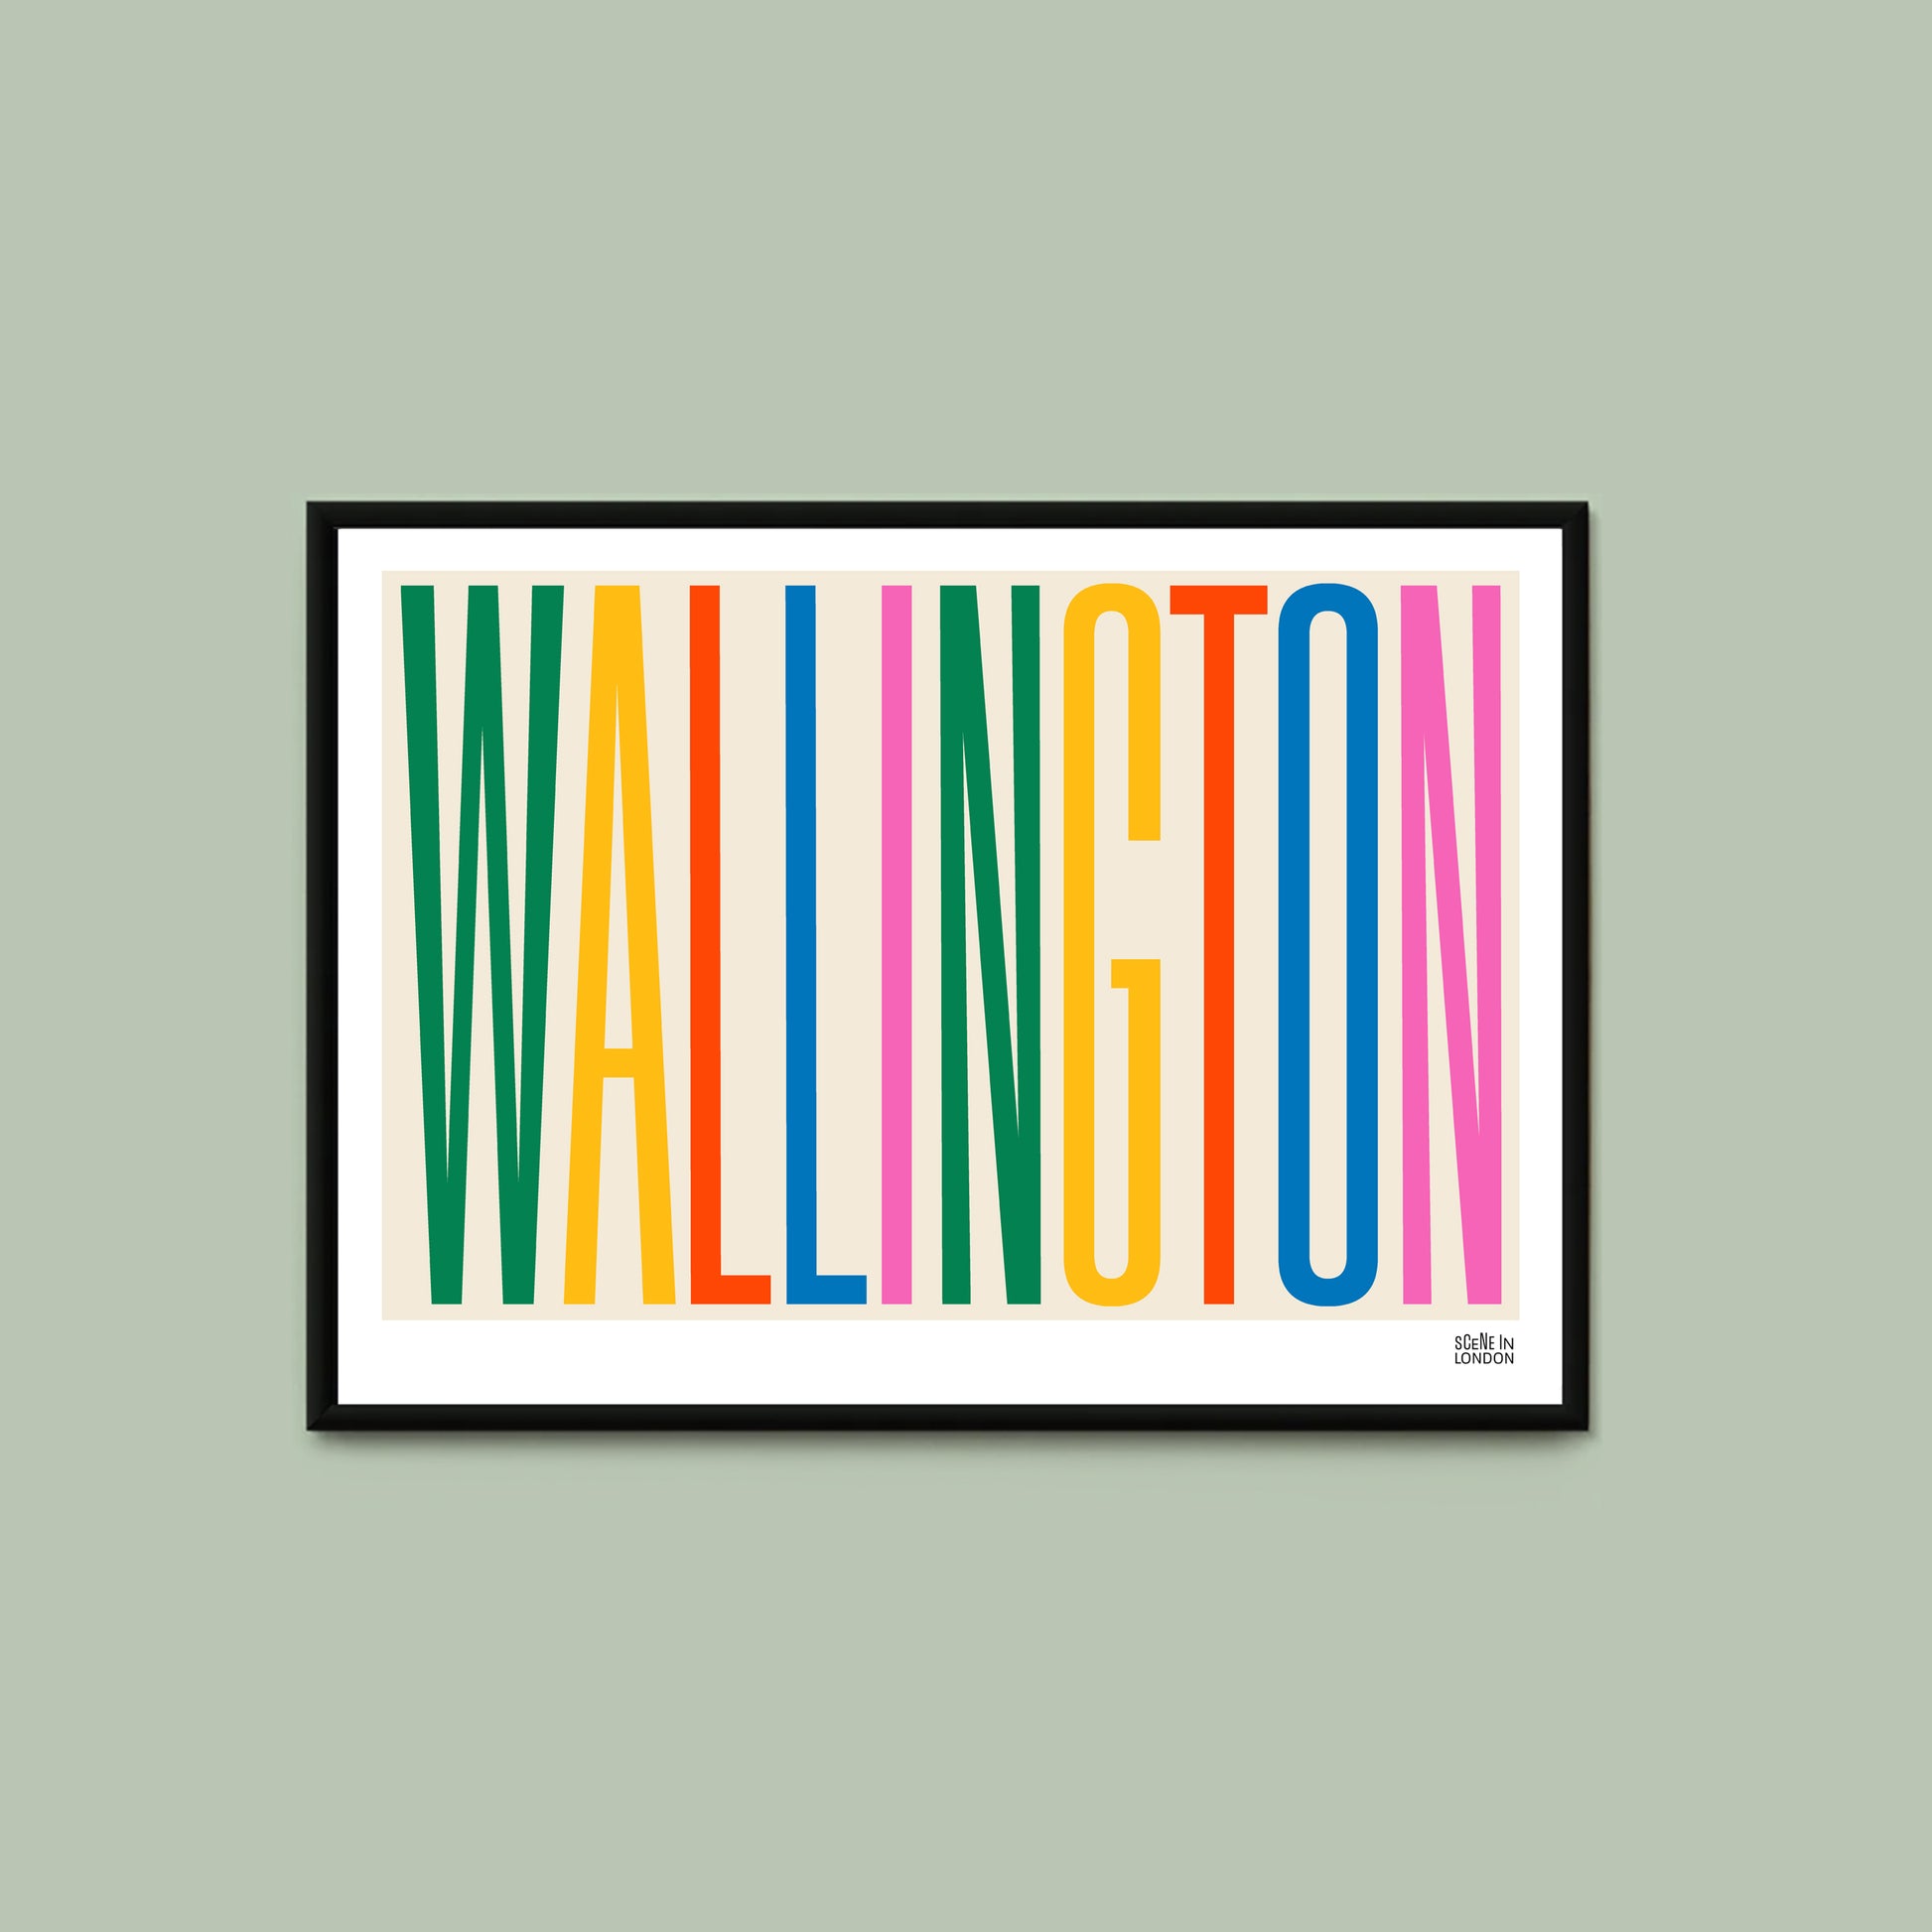 Wallington Surrey